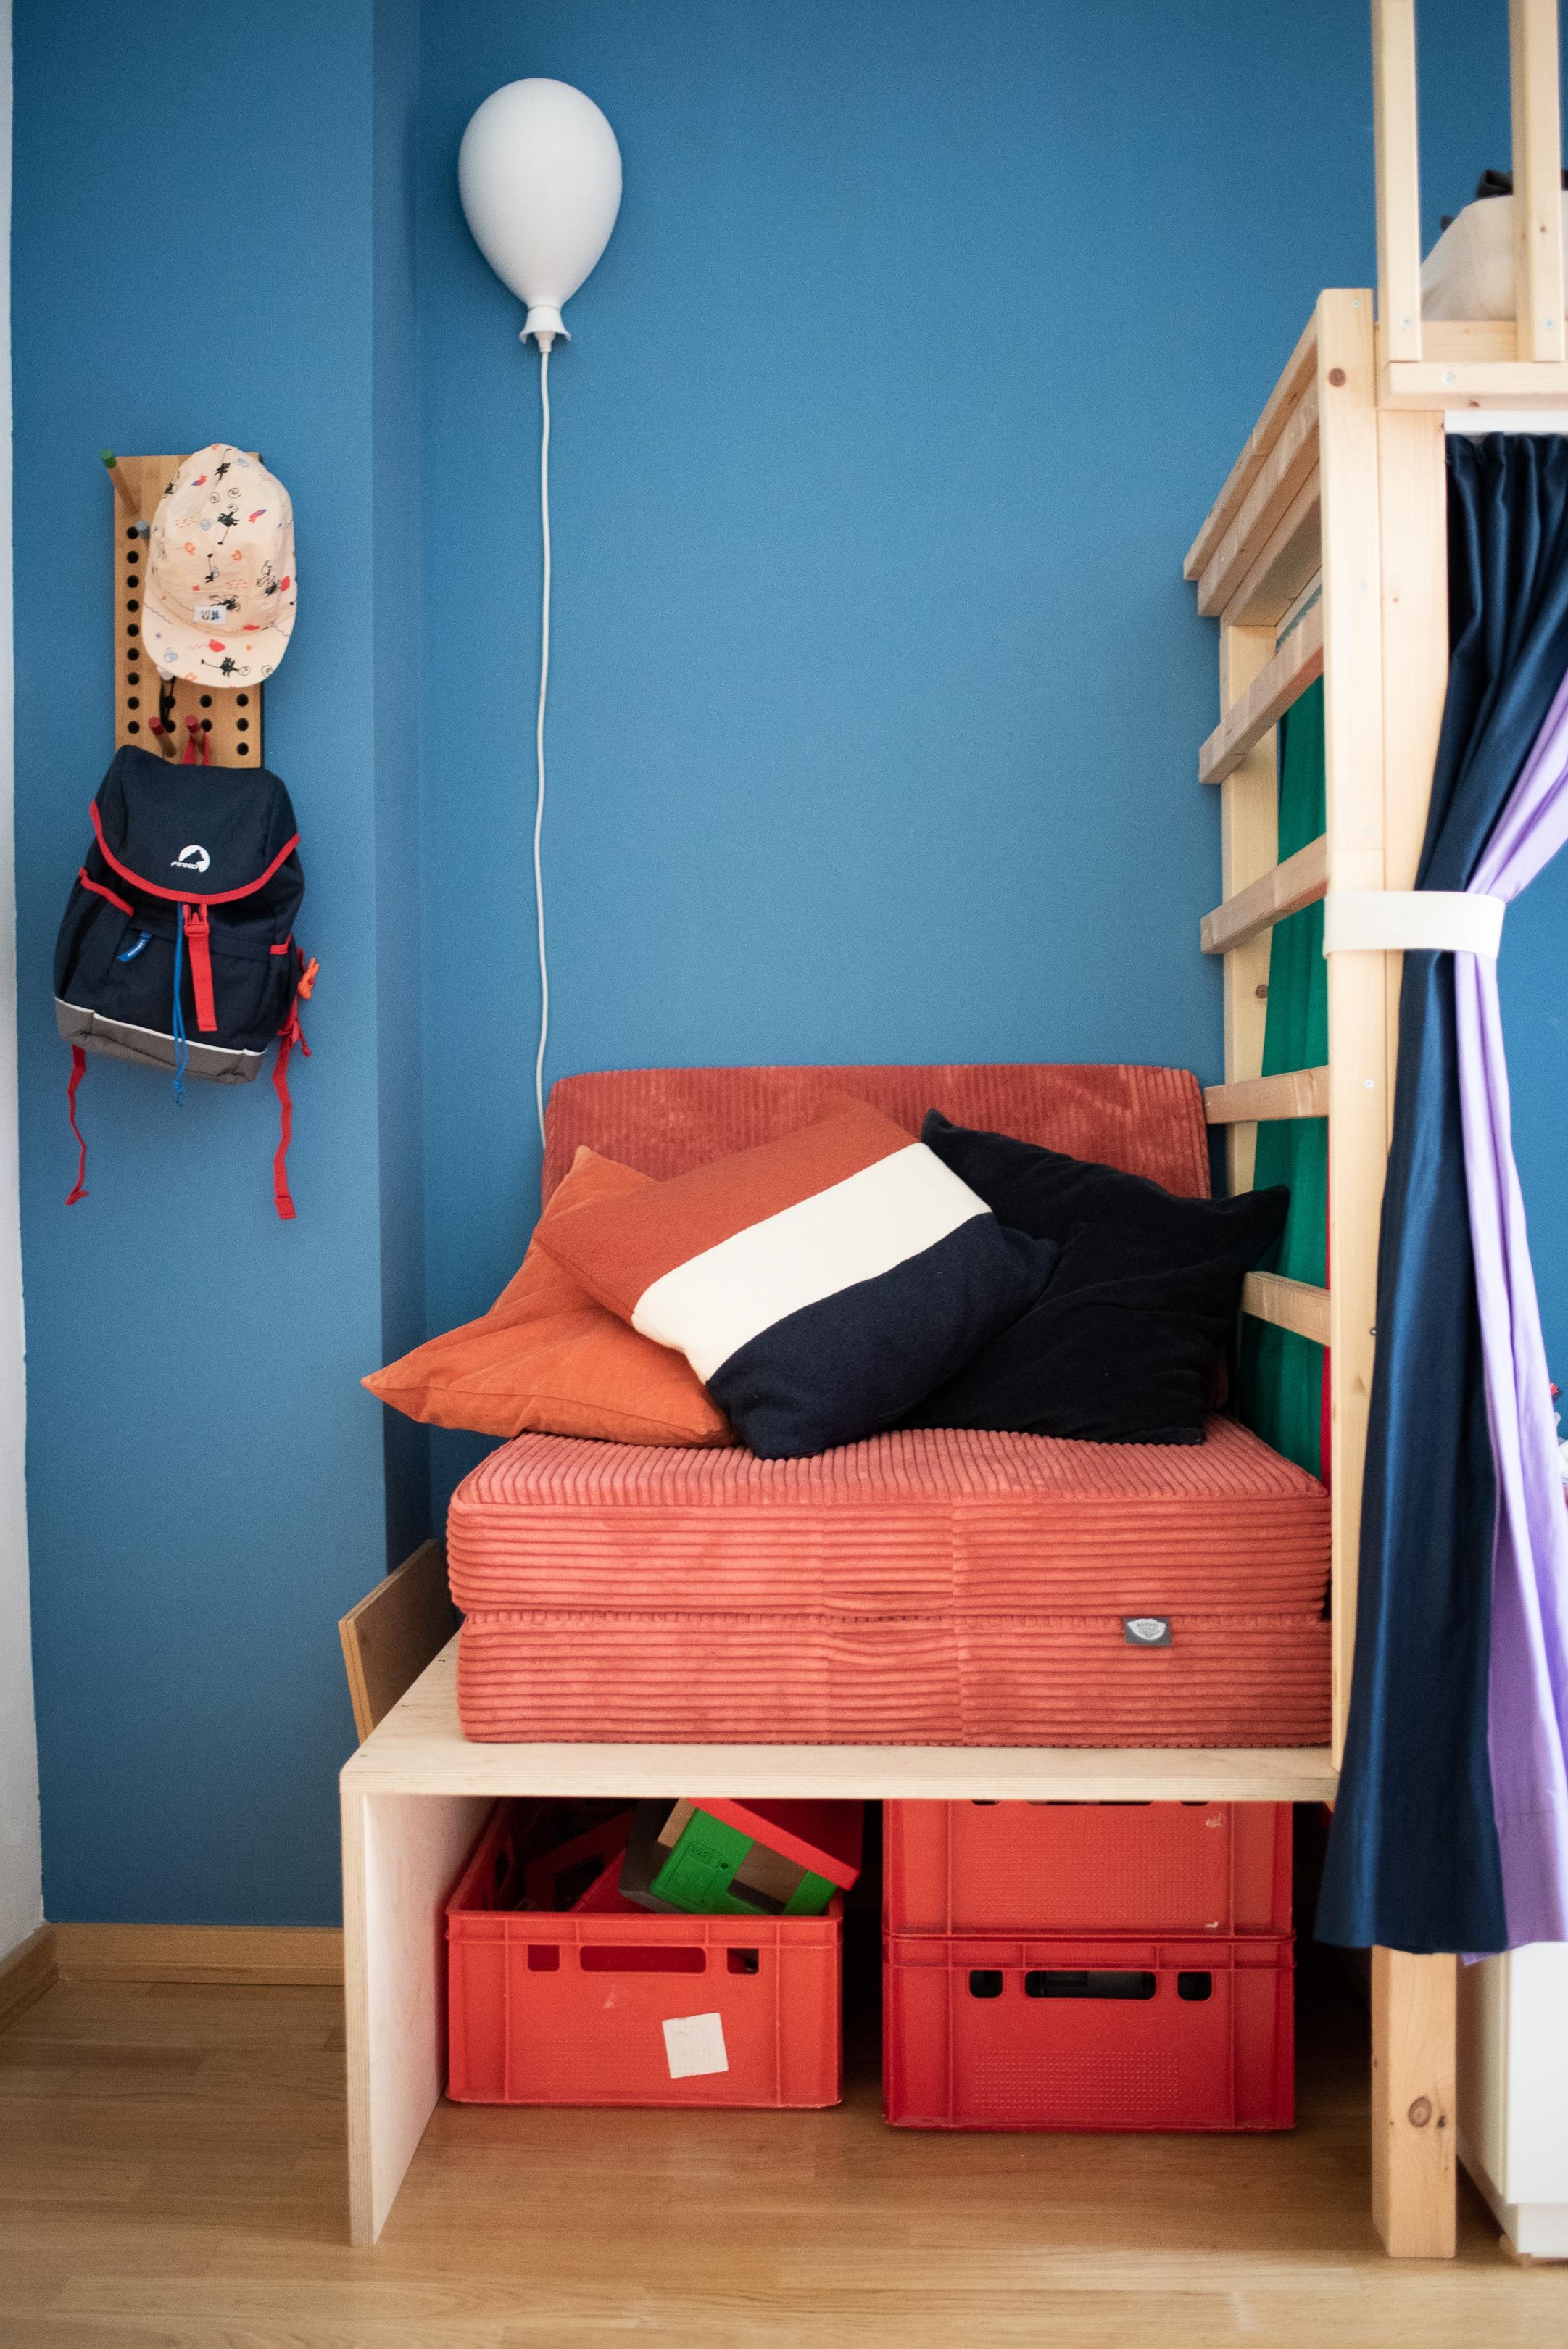 Neue Kuschelecke im Kinderzimmer #kinderzimmer #interiorinspo #colourful #bluewall #kuschelecke